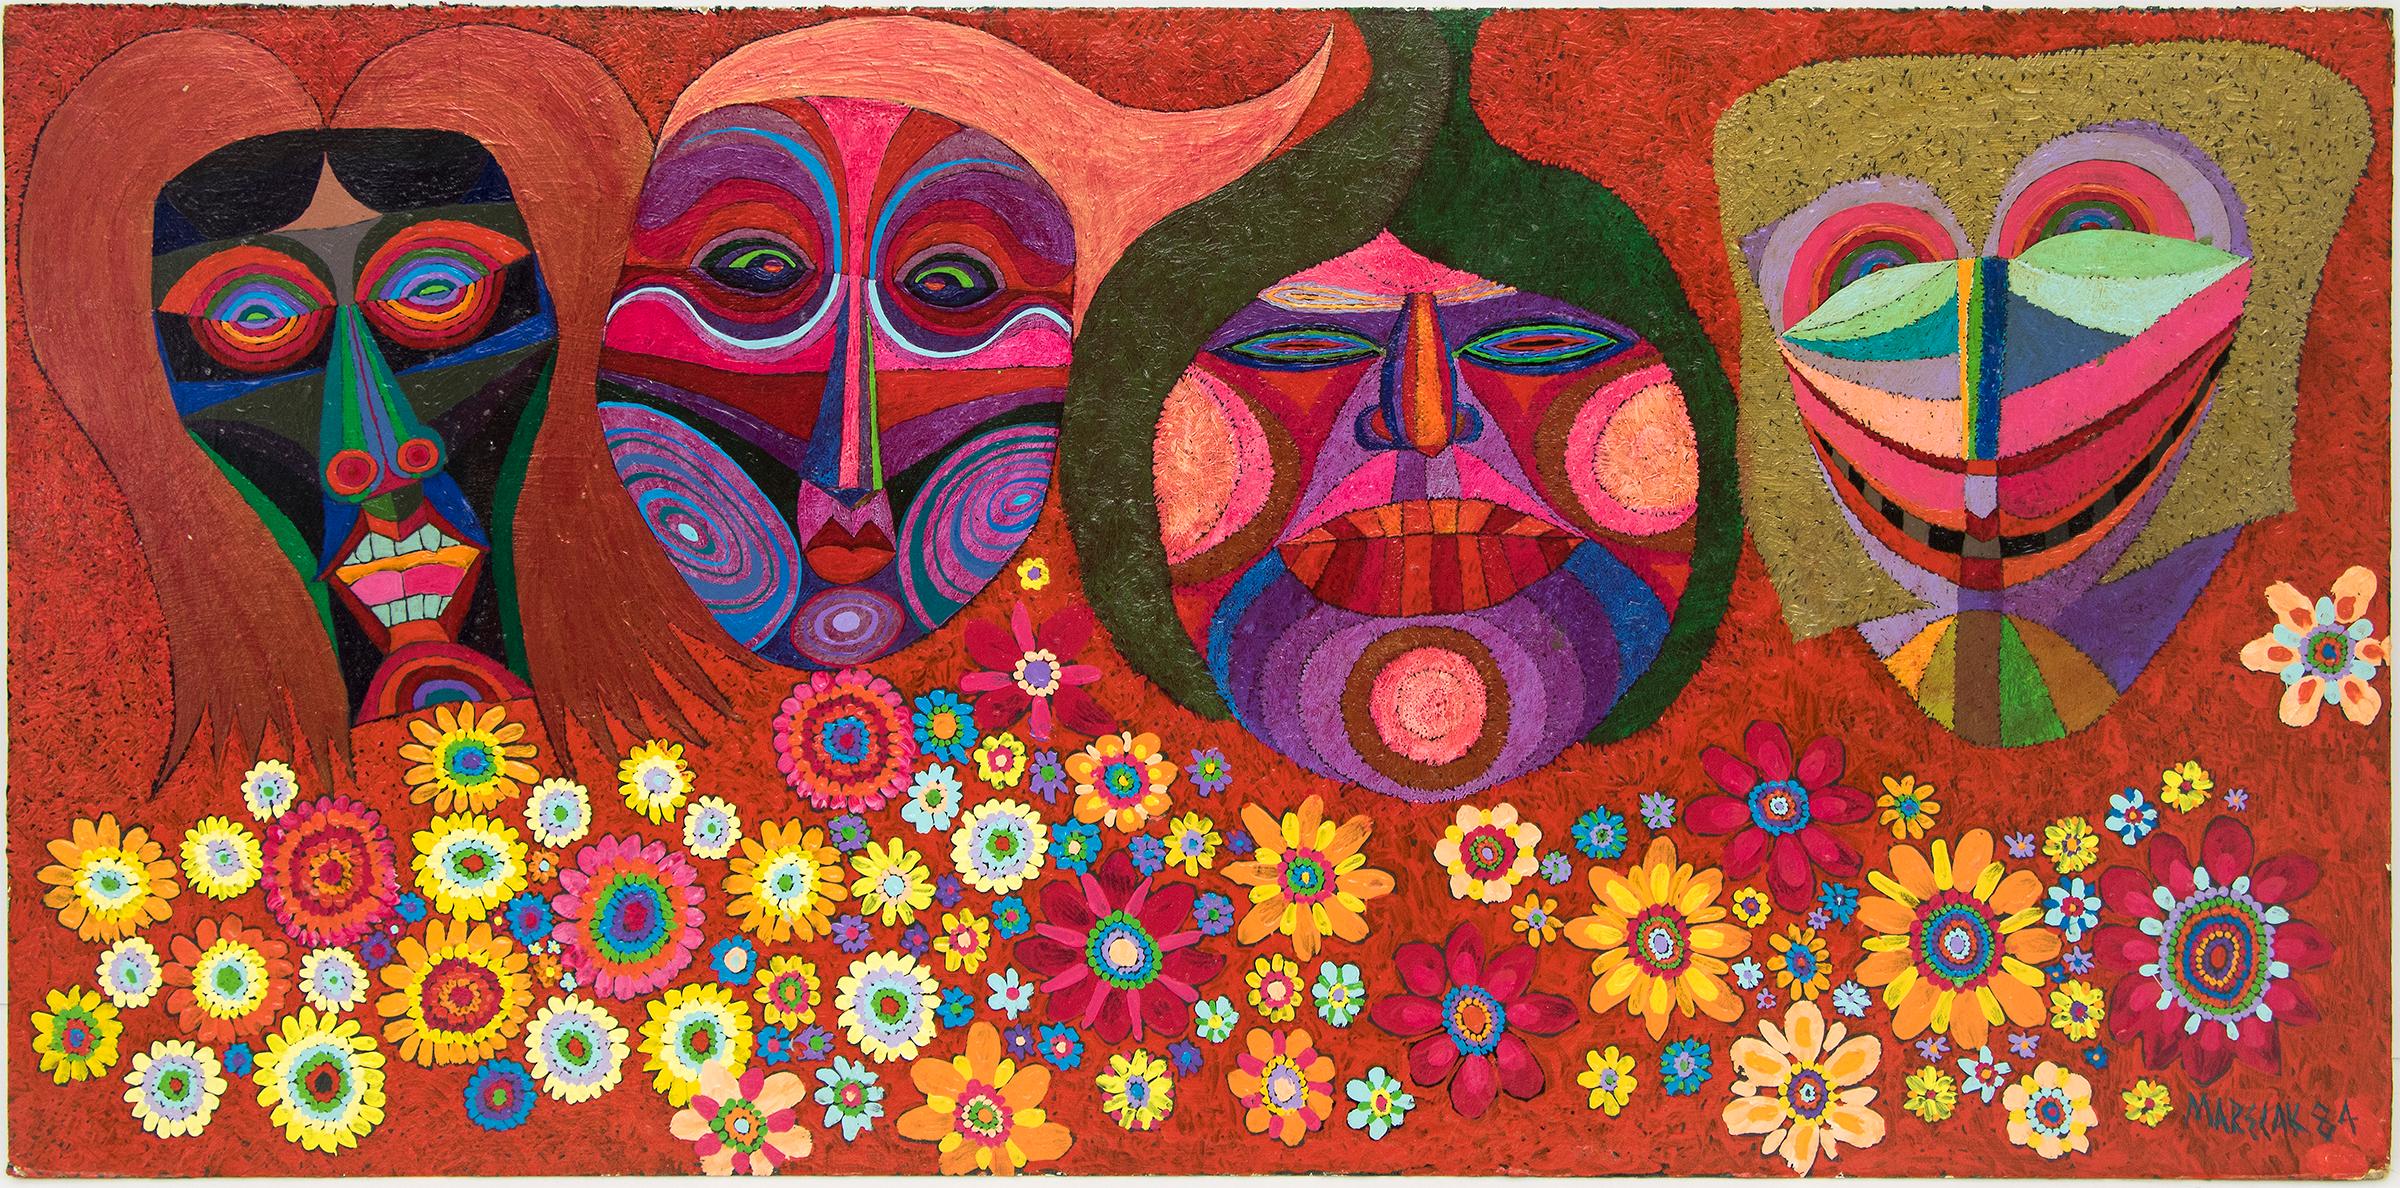 Masken und Blumen, halb abstraktes Vintage-Gemälde 1984, Rot, Gelb, Grün und Rosa (Braun), Abstract Painting, von Edward Marecak